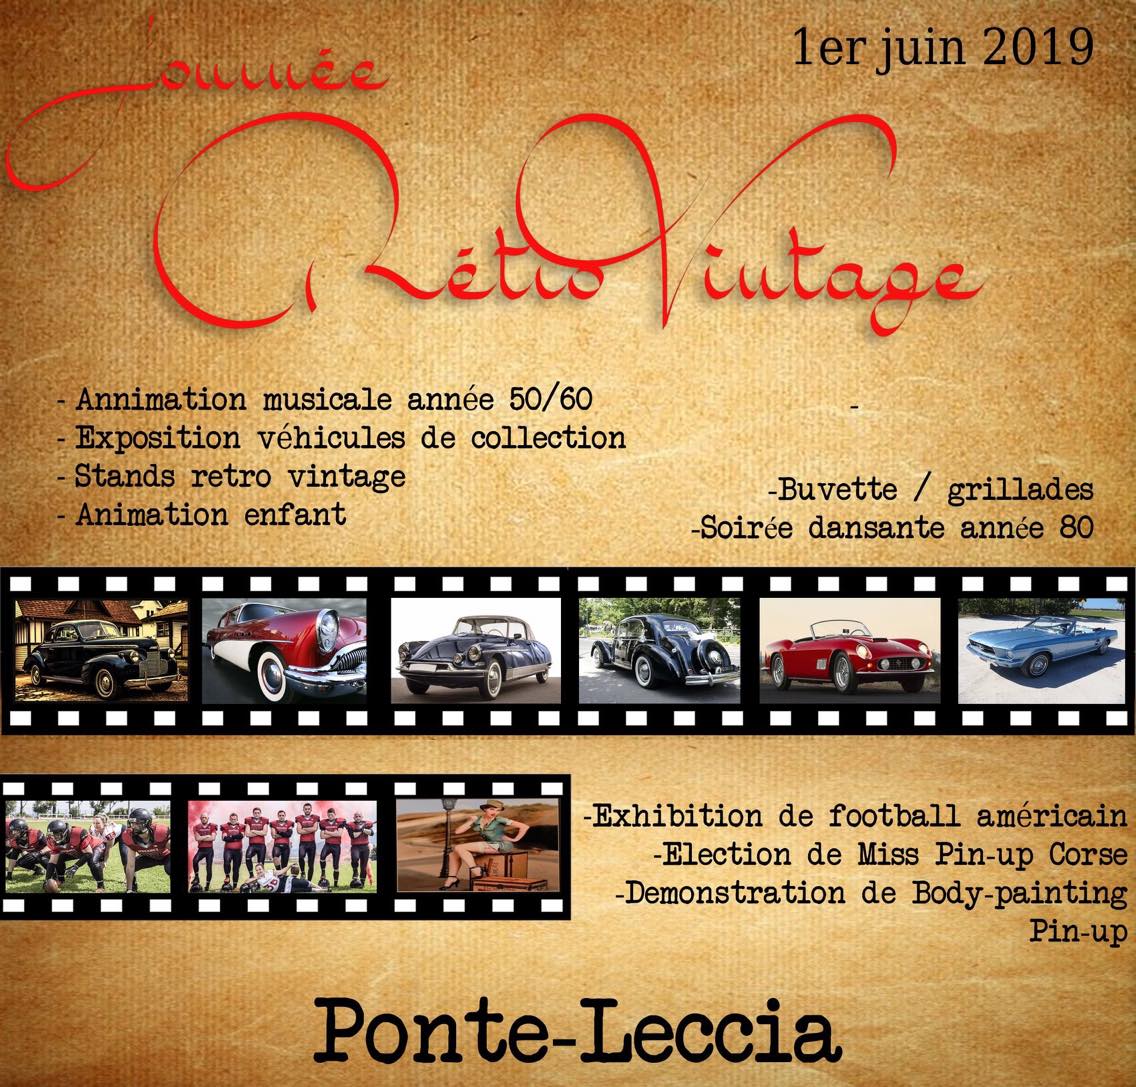 Ponte Leccia : Une journée Rétro Vintage !